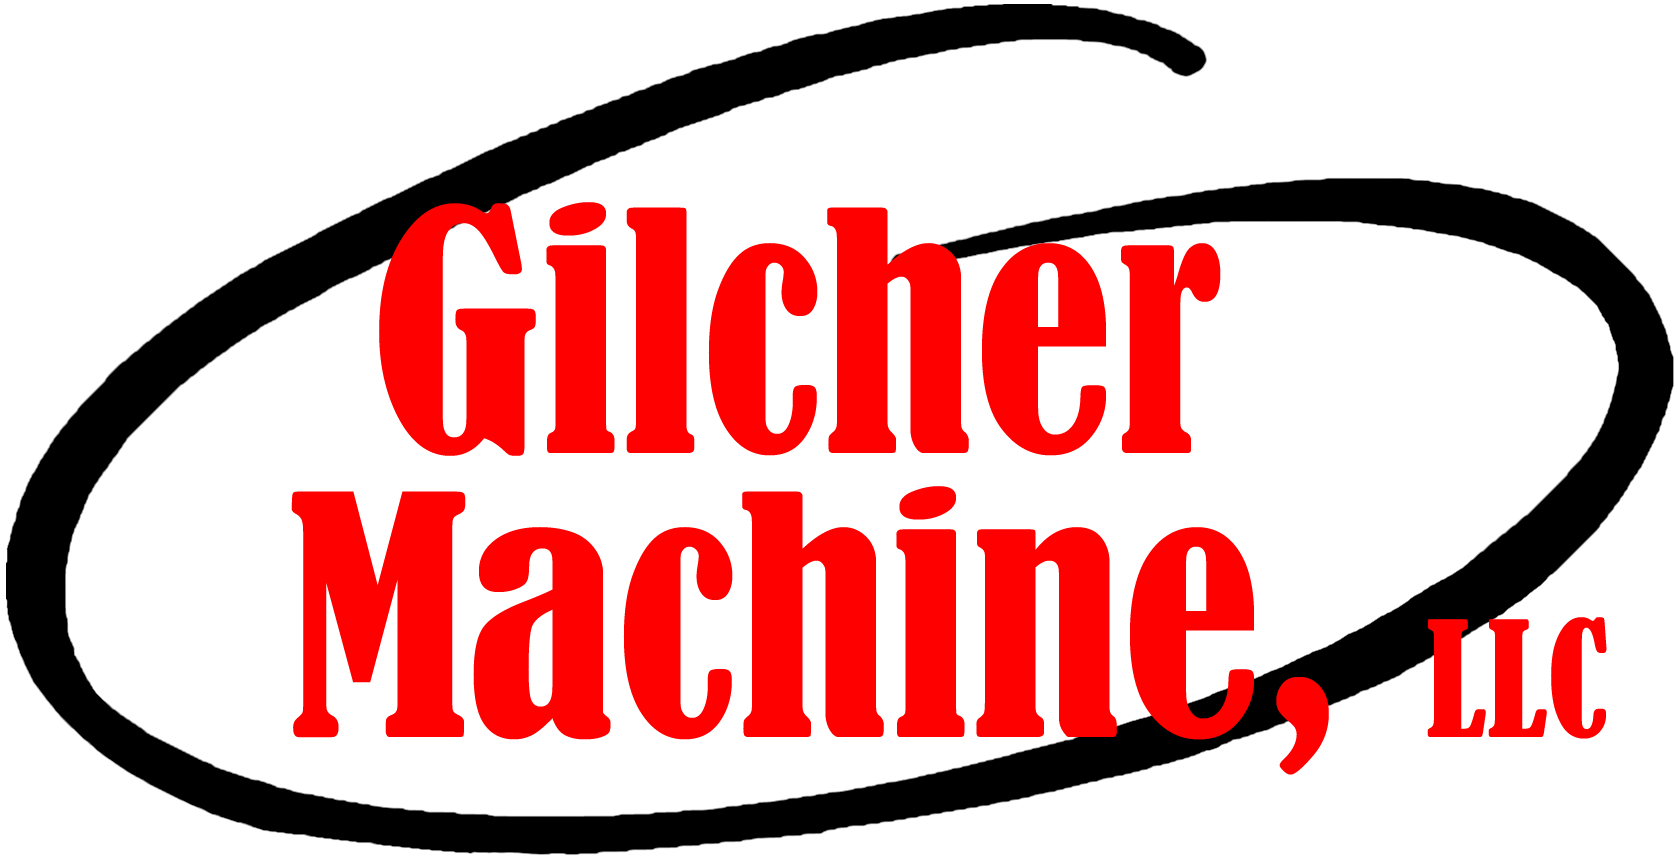 Gilcher Machine